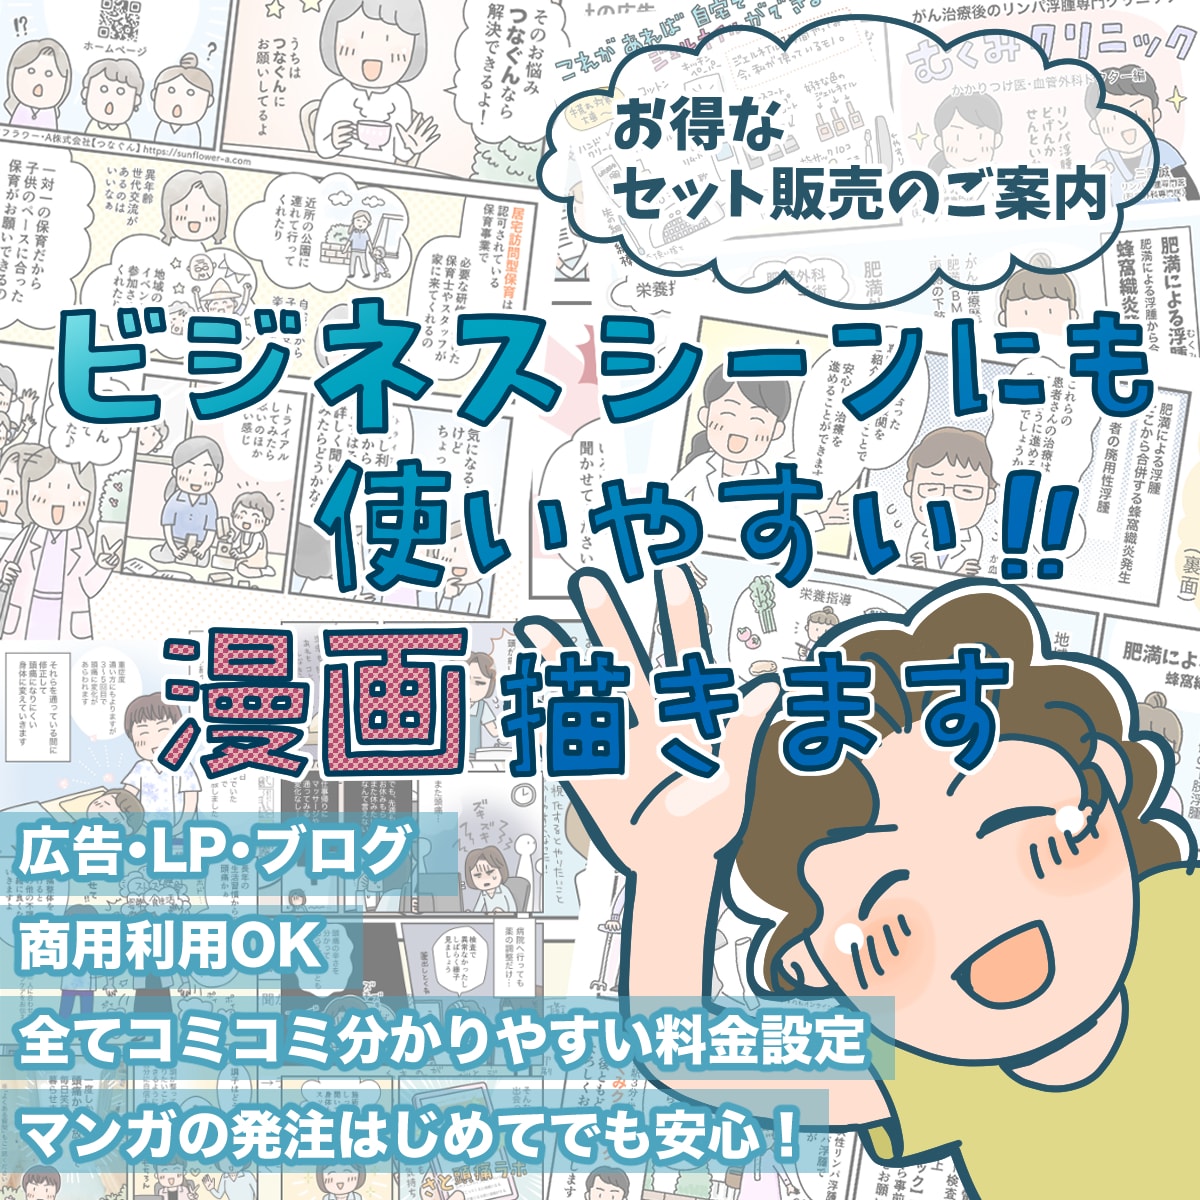 💬ココナラ｜シナリオからまるっとおまかせ【広告漫画】描きます   マツキヨコ  
                5.0
               …